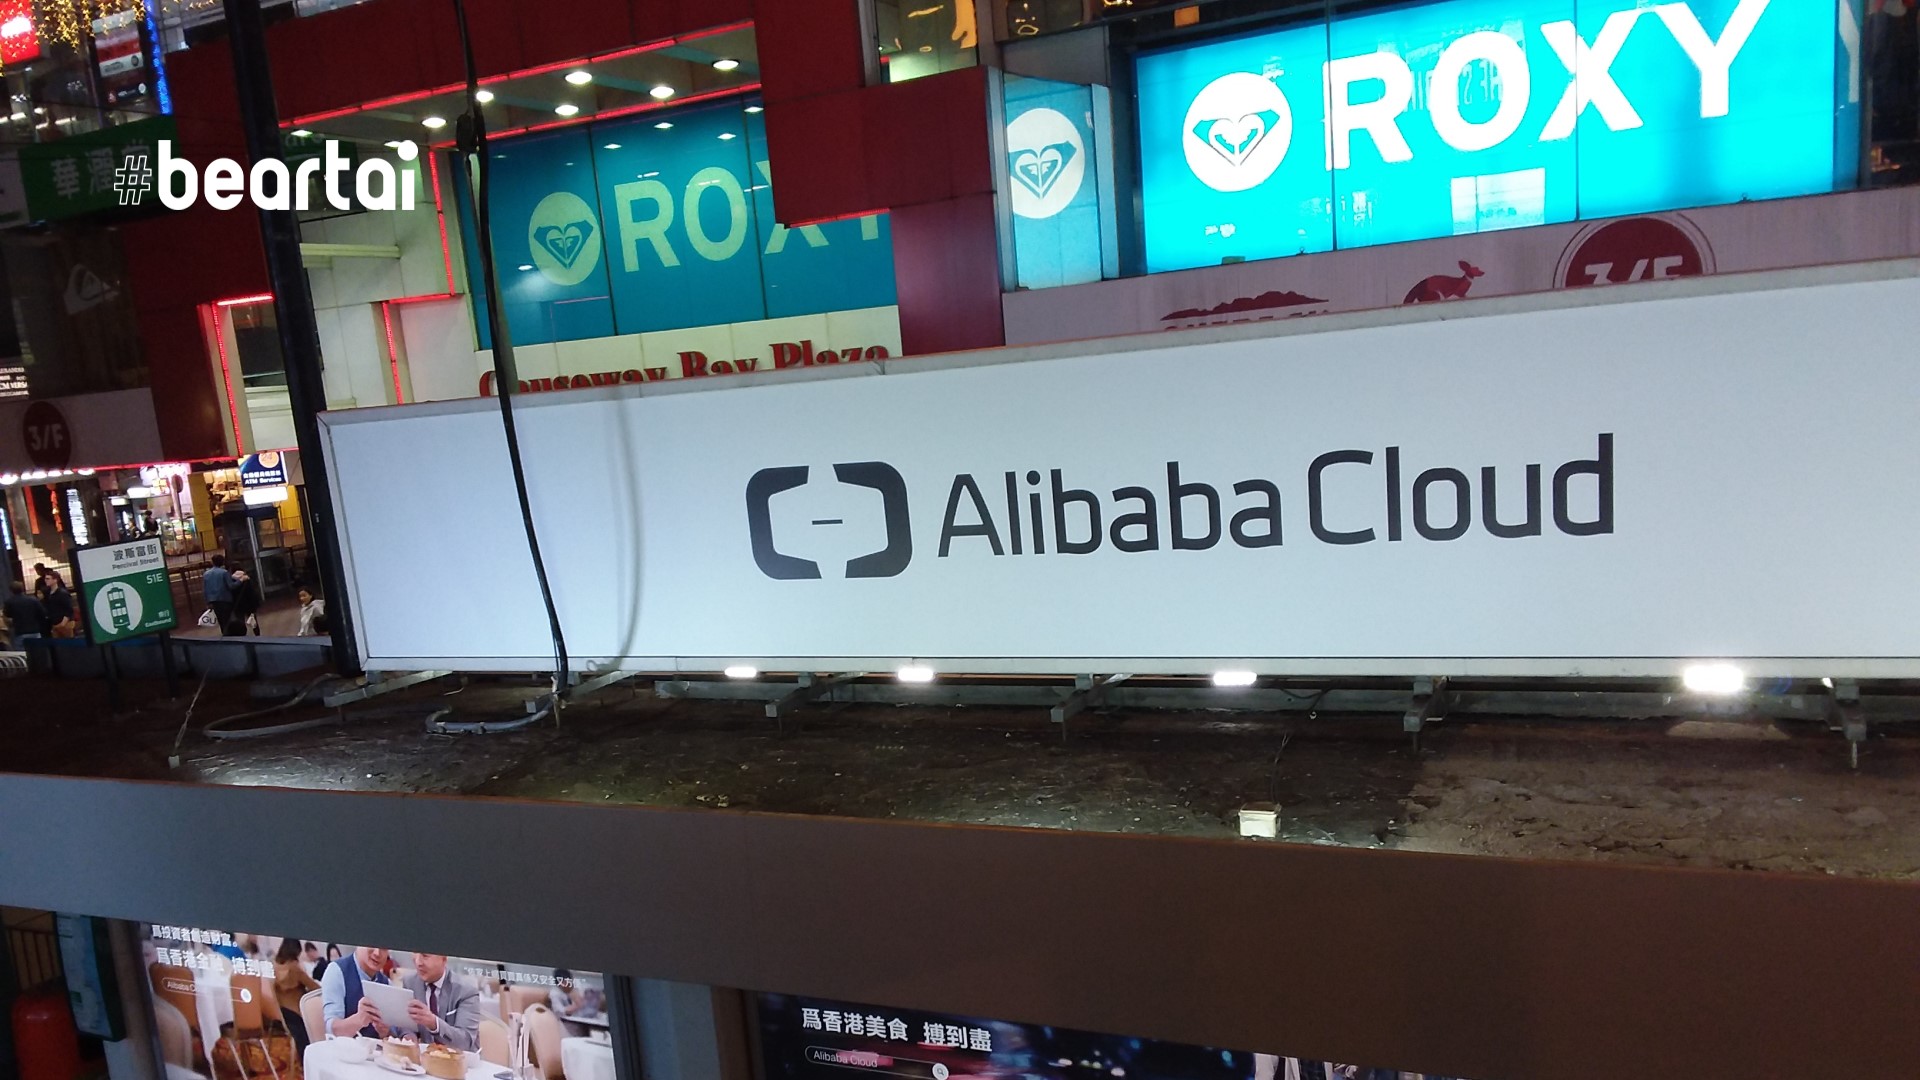 Alibaba Cloud โกยรายได้ไตรมาส 1 ที่ 1,750 ล้านดอลลาร์ อัตรารายได้ต่อปี 7,000 ล้านดอลลาร์